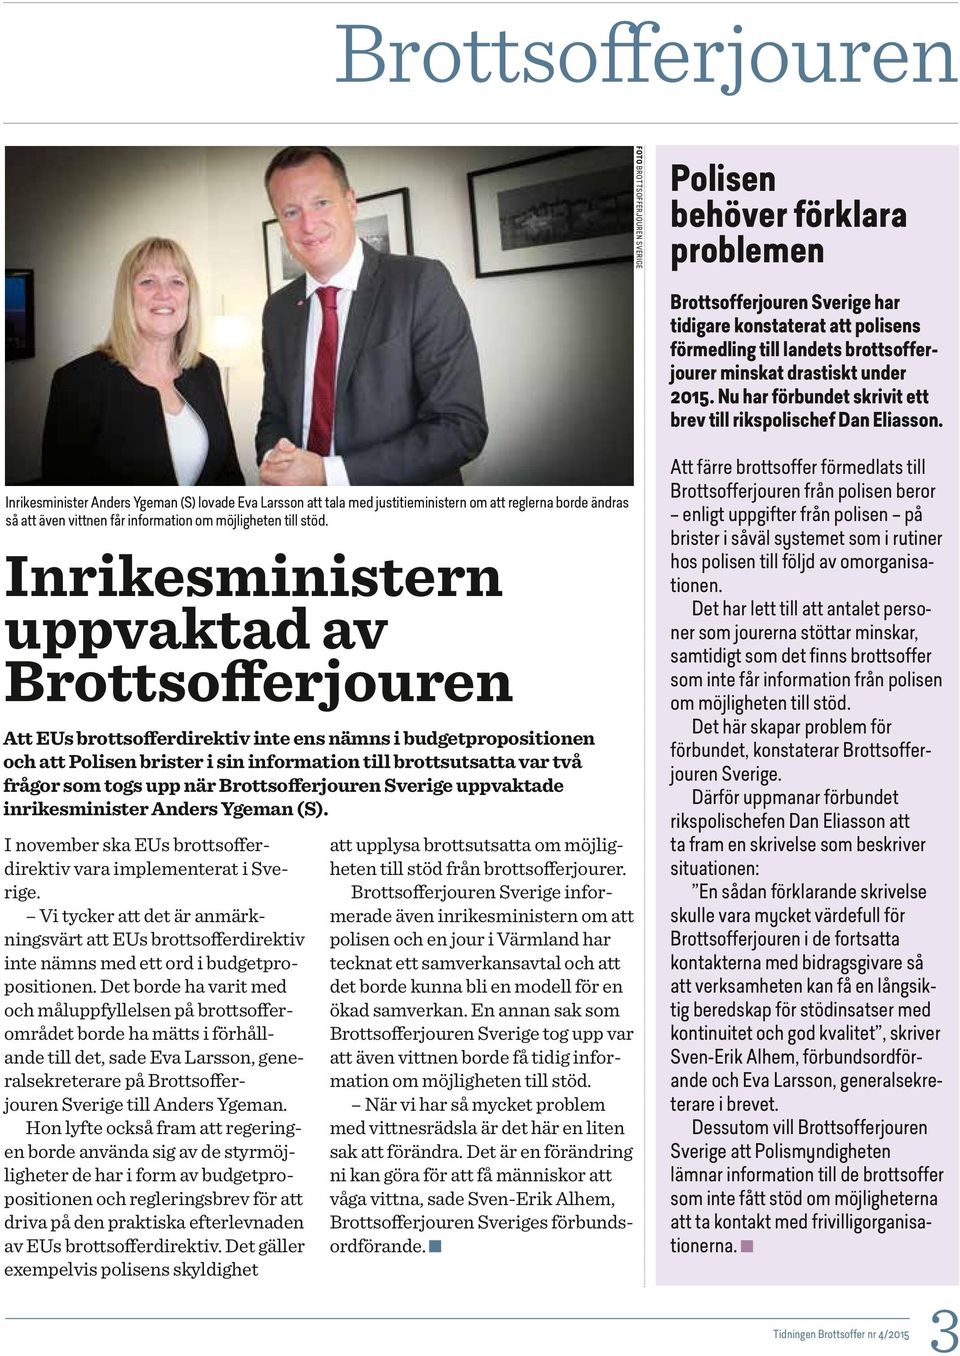 Inrikesminister Anders Ygeman (S) lovade Eva Larsson att tala med justitieministern om att reglerna borde ändras så att även vittnen får information om möjligheten till stöd.